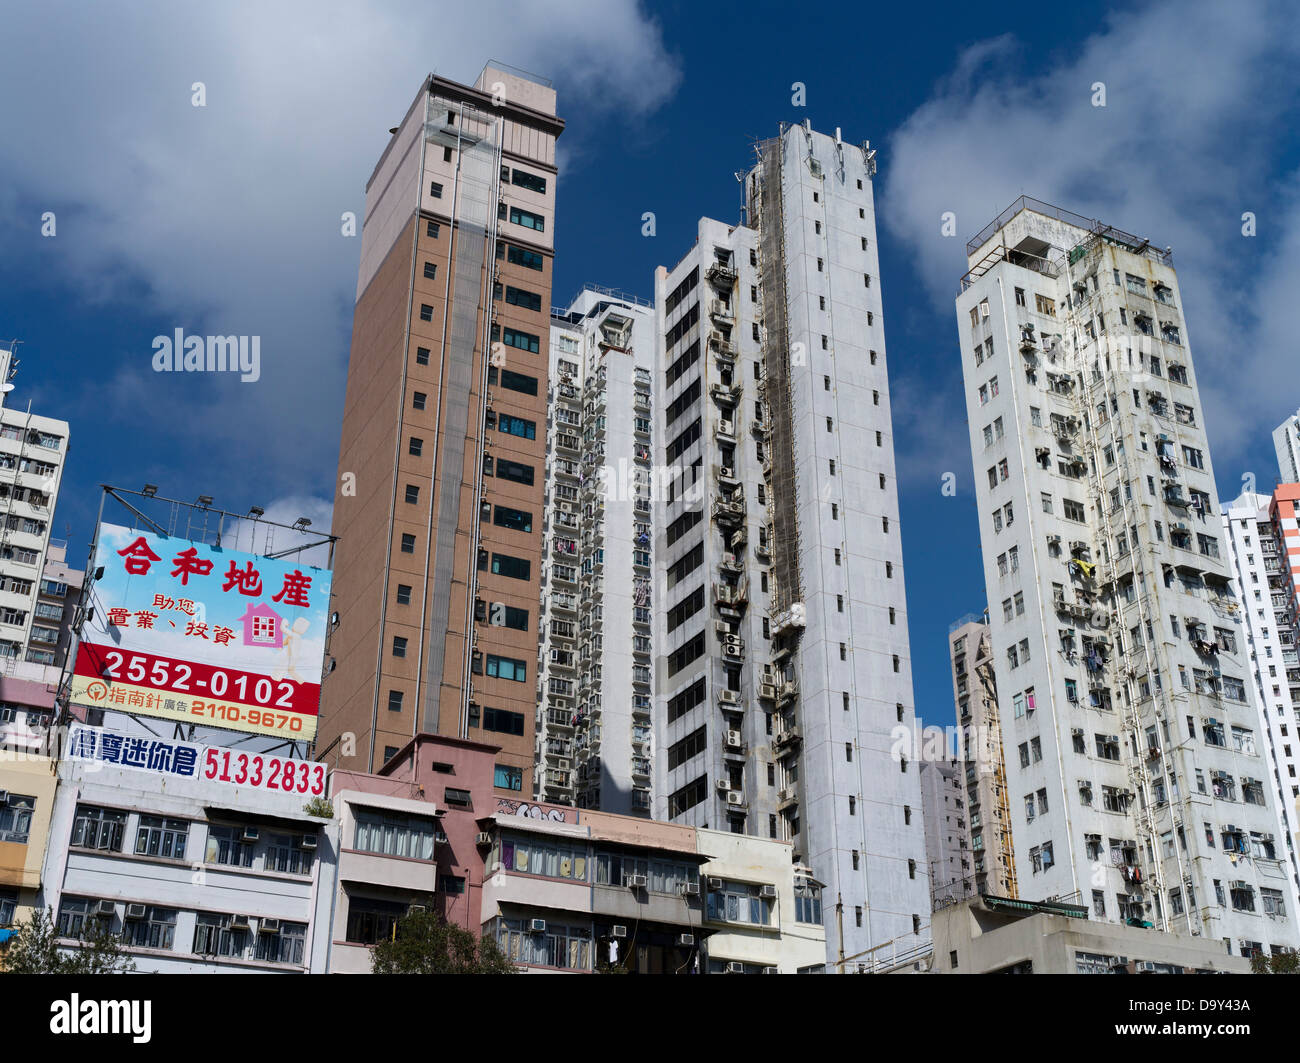 dh Flats ABERDEEN HONG KONG Old skyscraper highrise residential flats Aberdeen Hong Kong housing flat Stock Photo